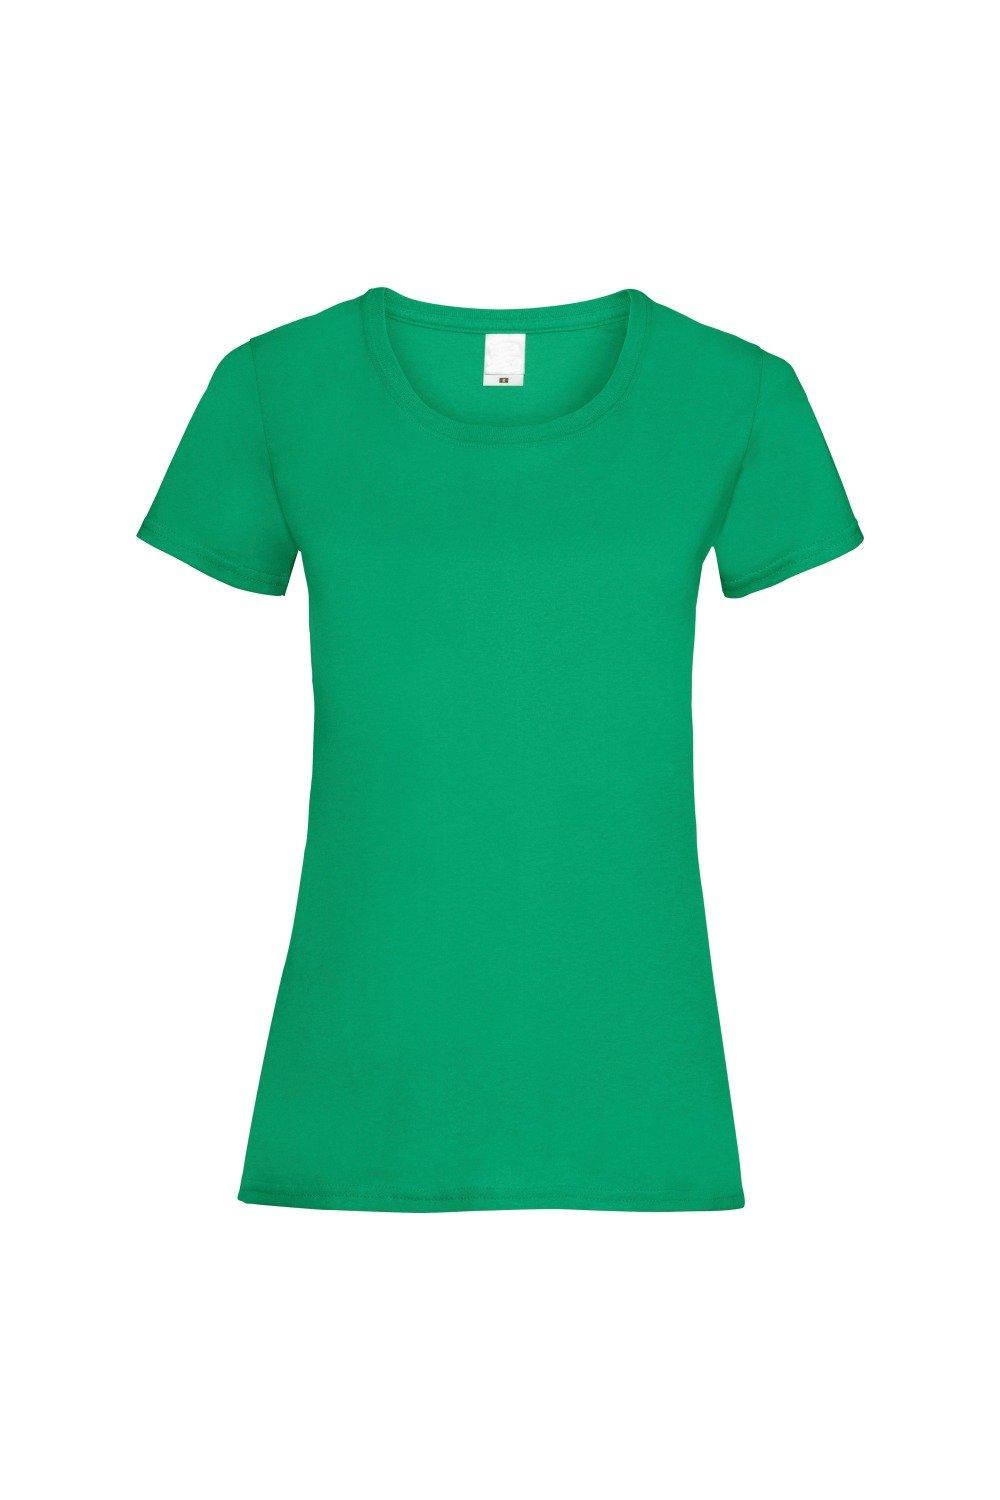 Повседневная футболка с короткими рукавами Value Universal Textiles, зеленый повседневная футболка value с длинным рукавом universal textiles белый